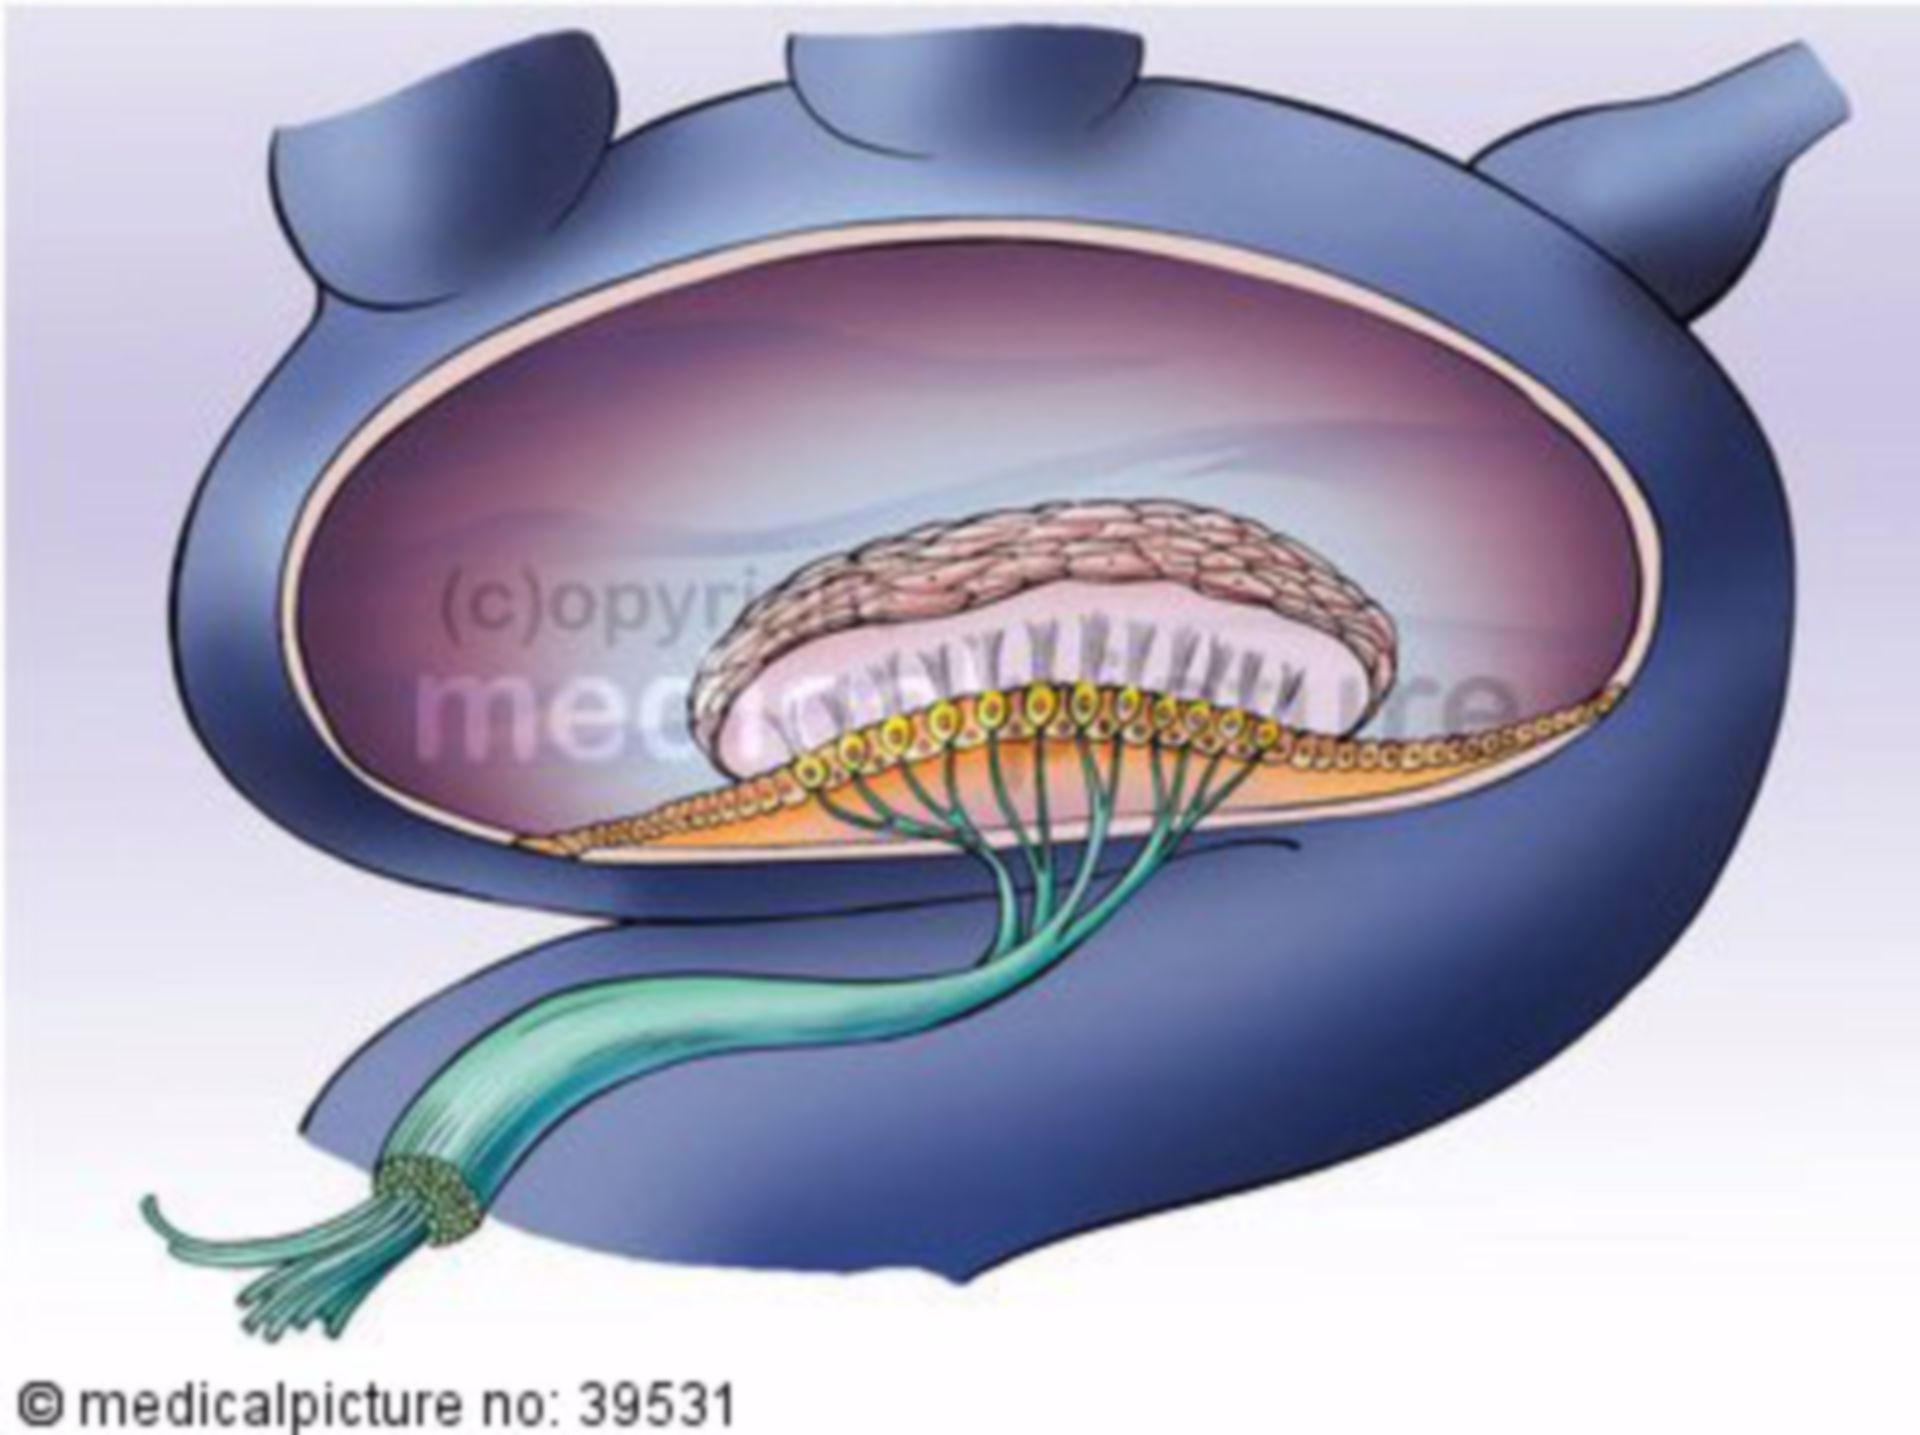 Macula of sacculus (ventricular organ)